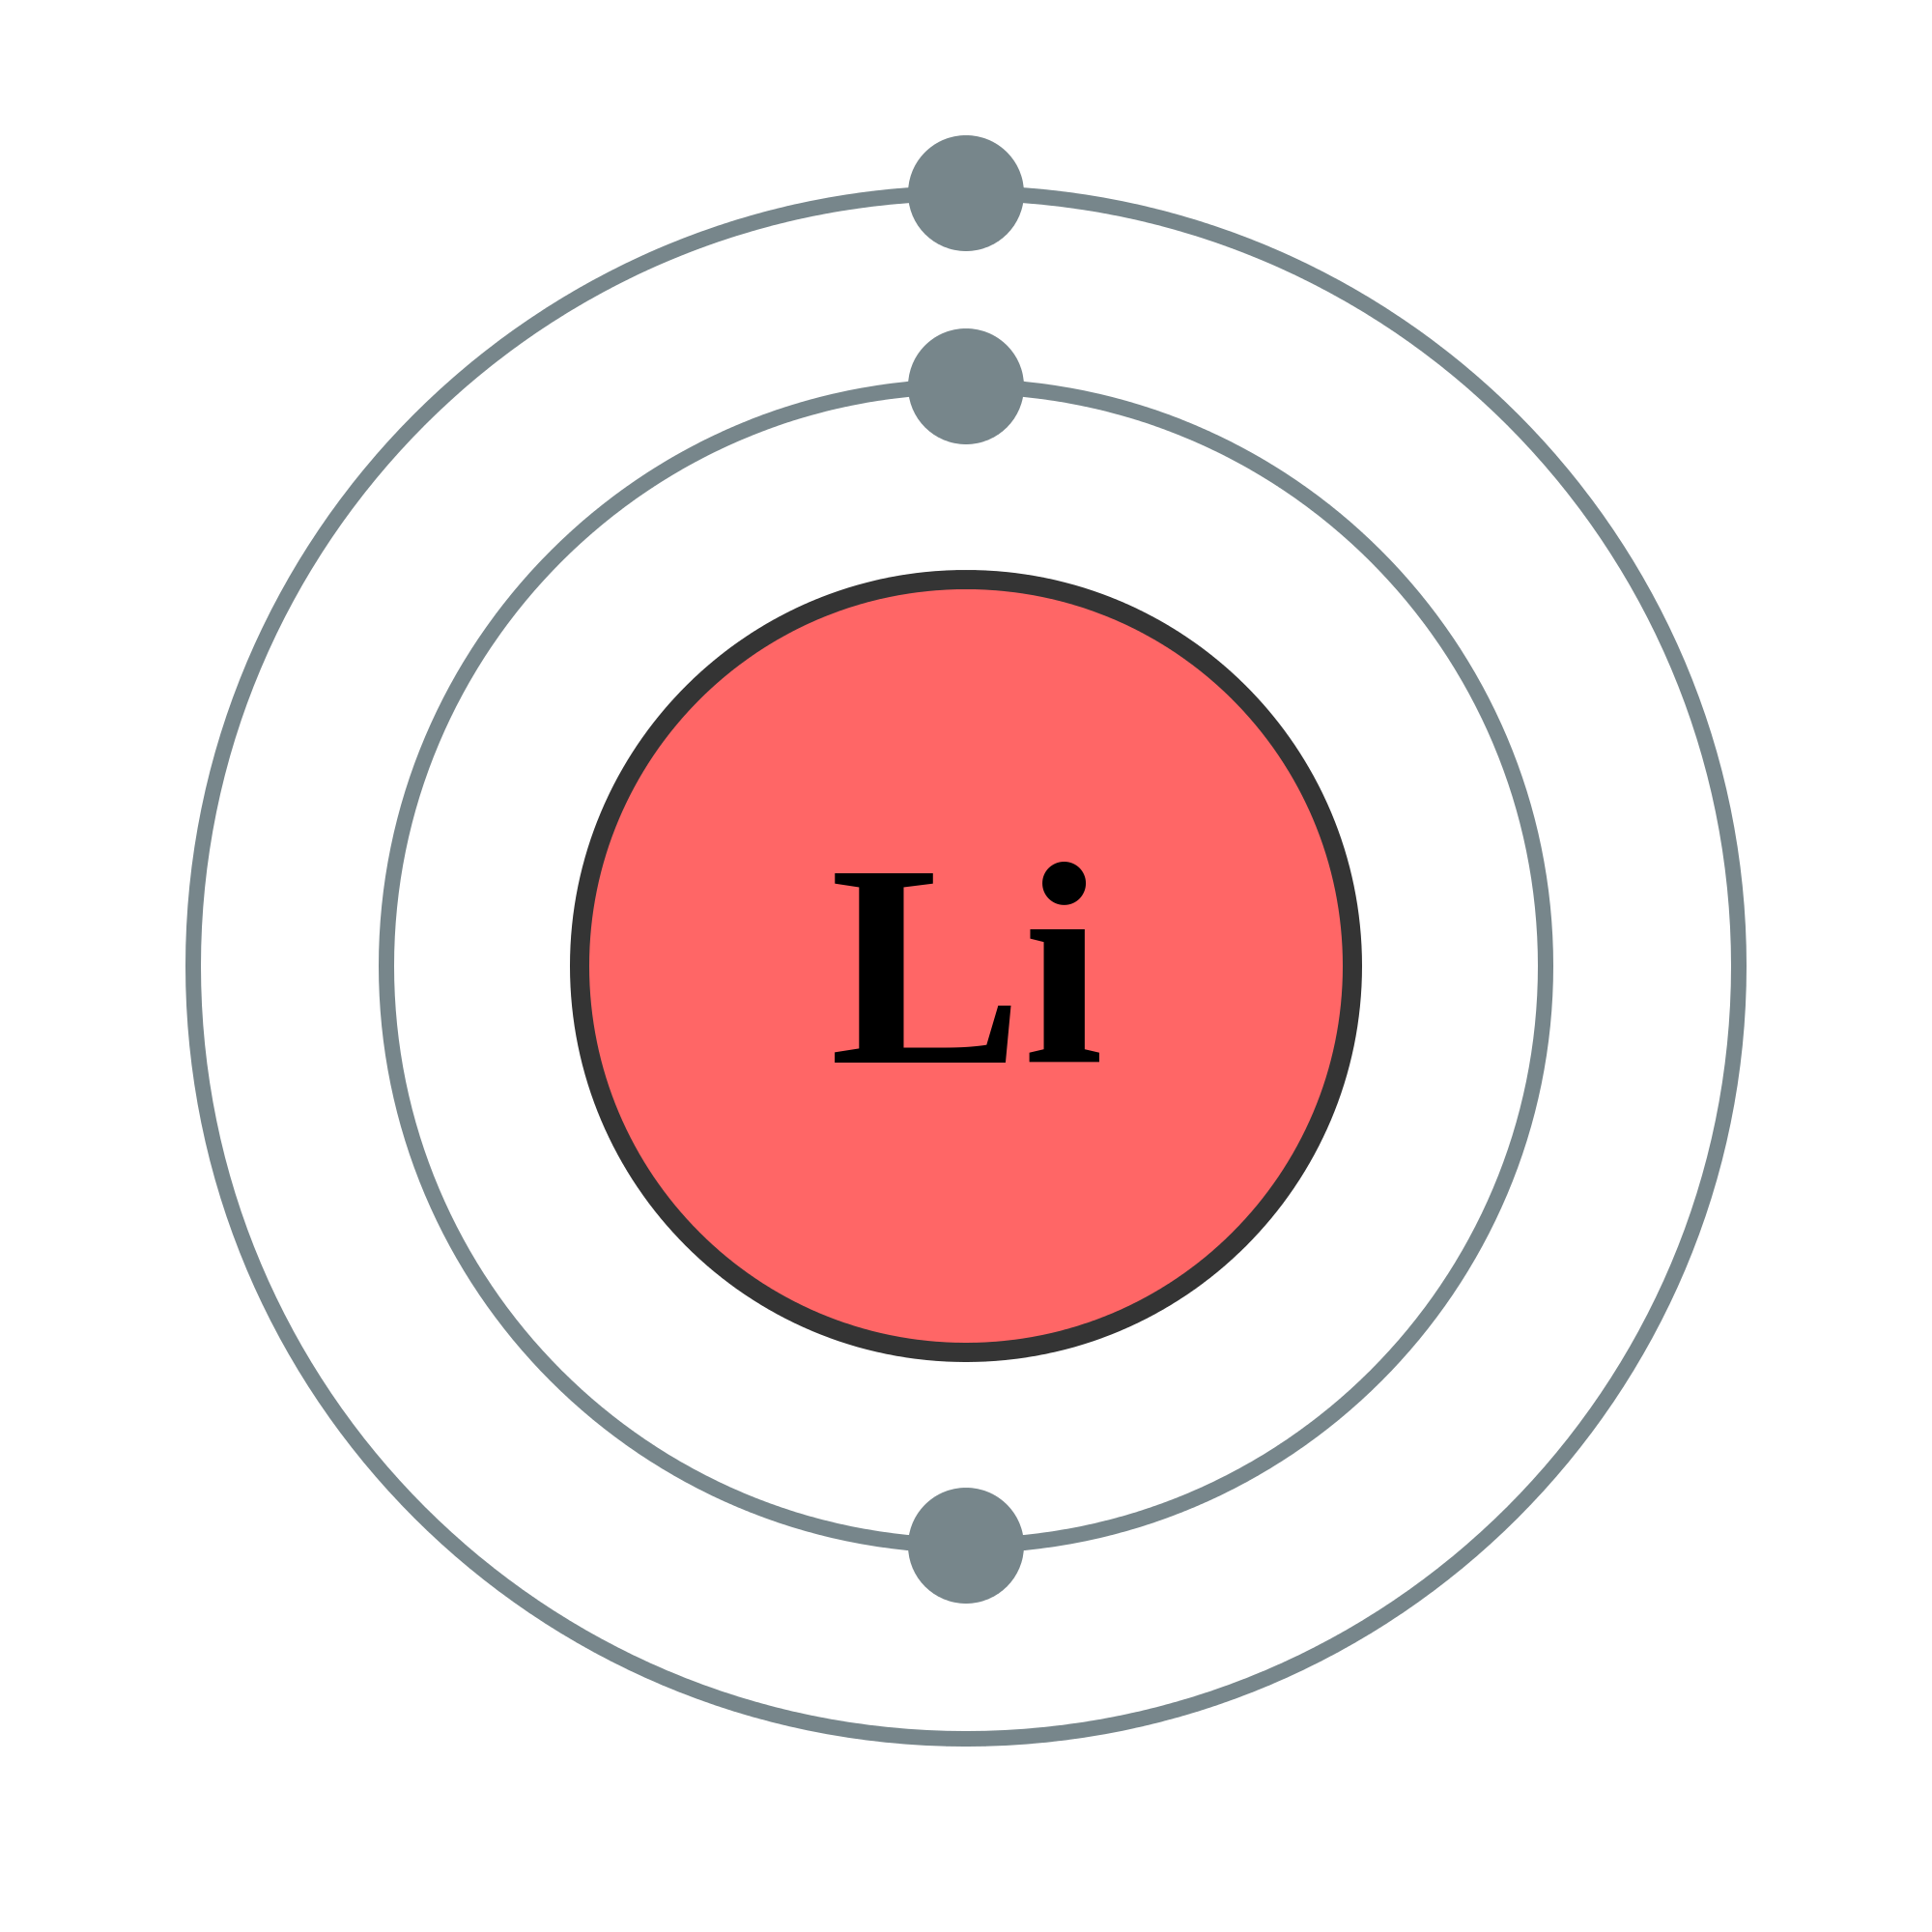 Lithium Elements Wiki